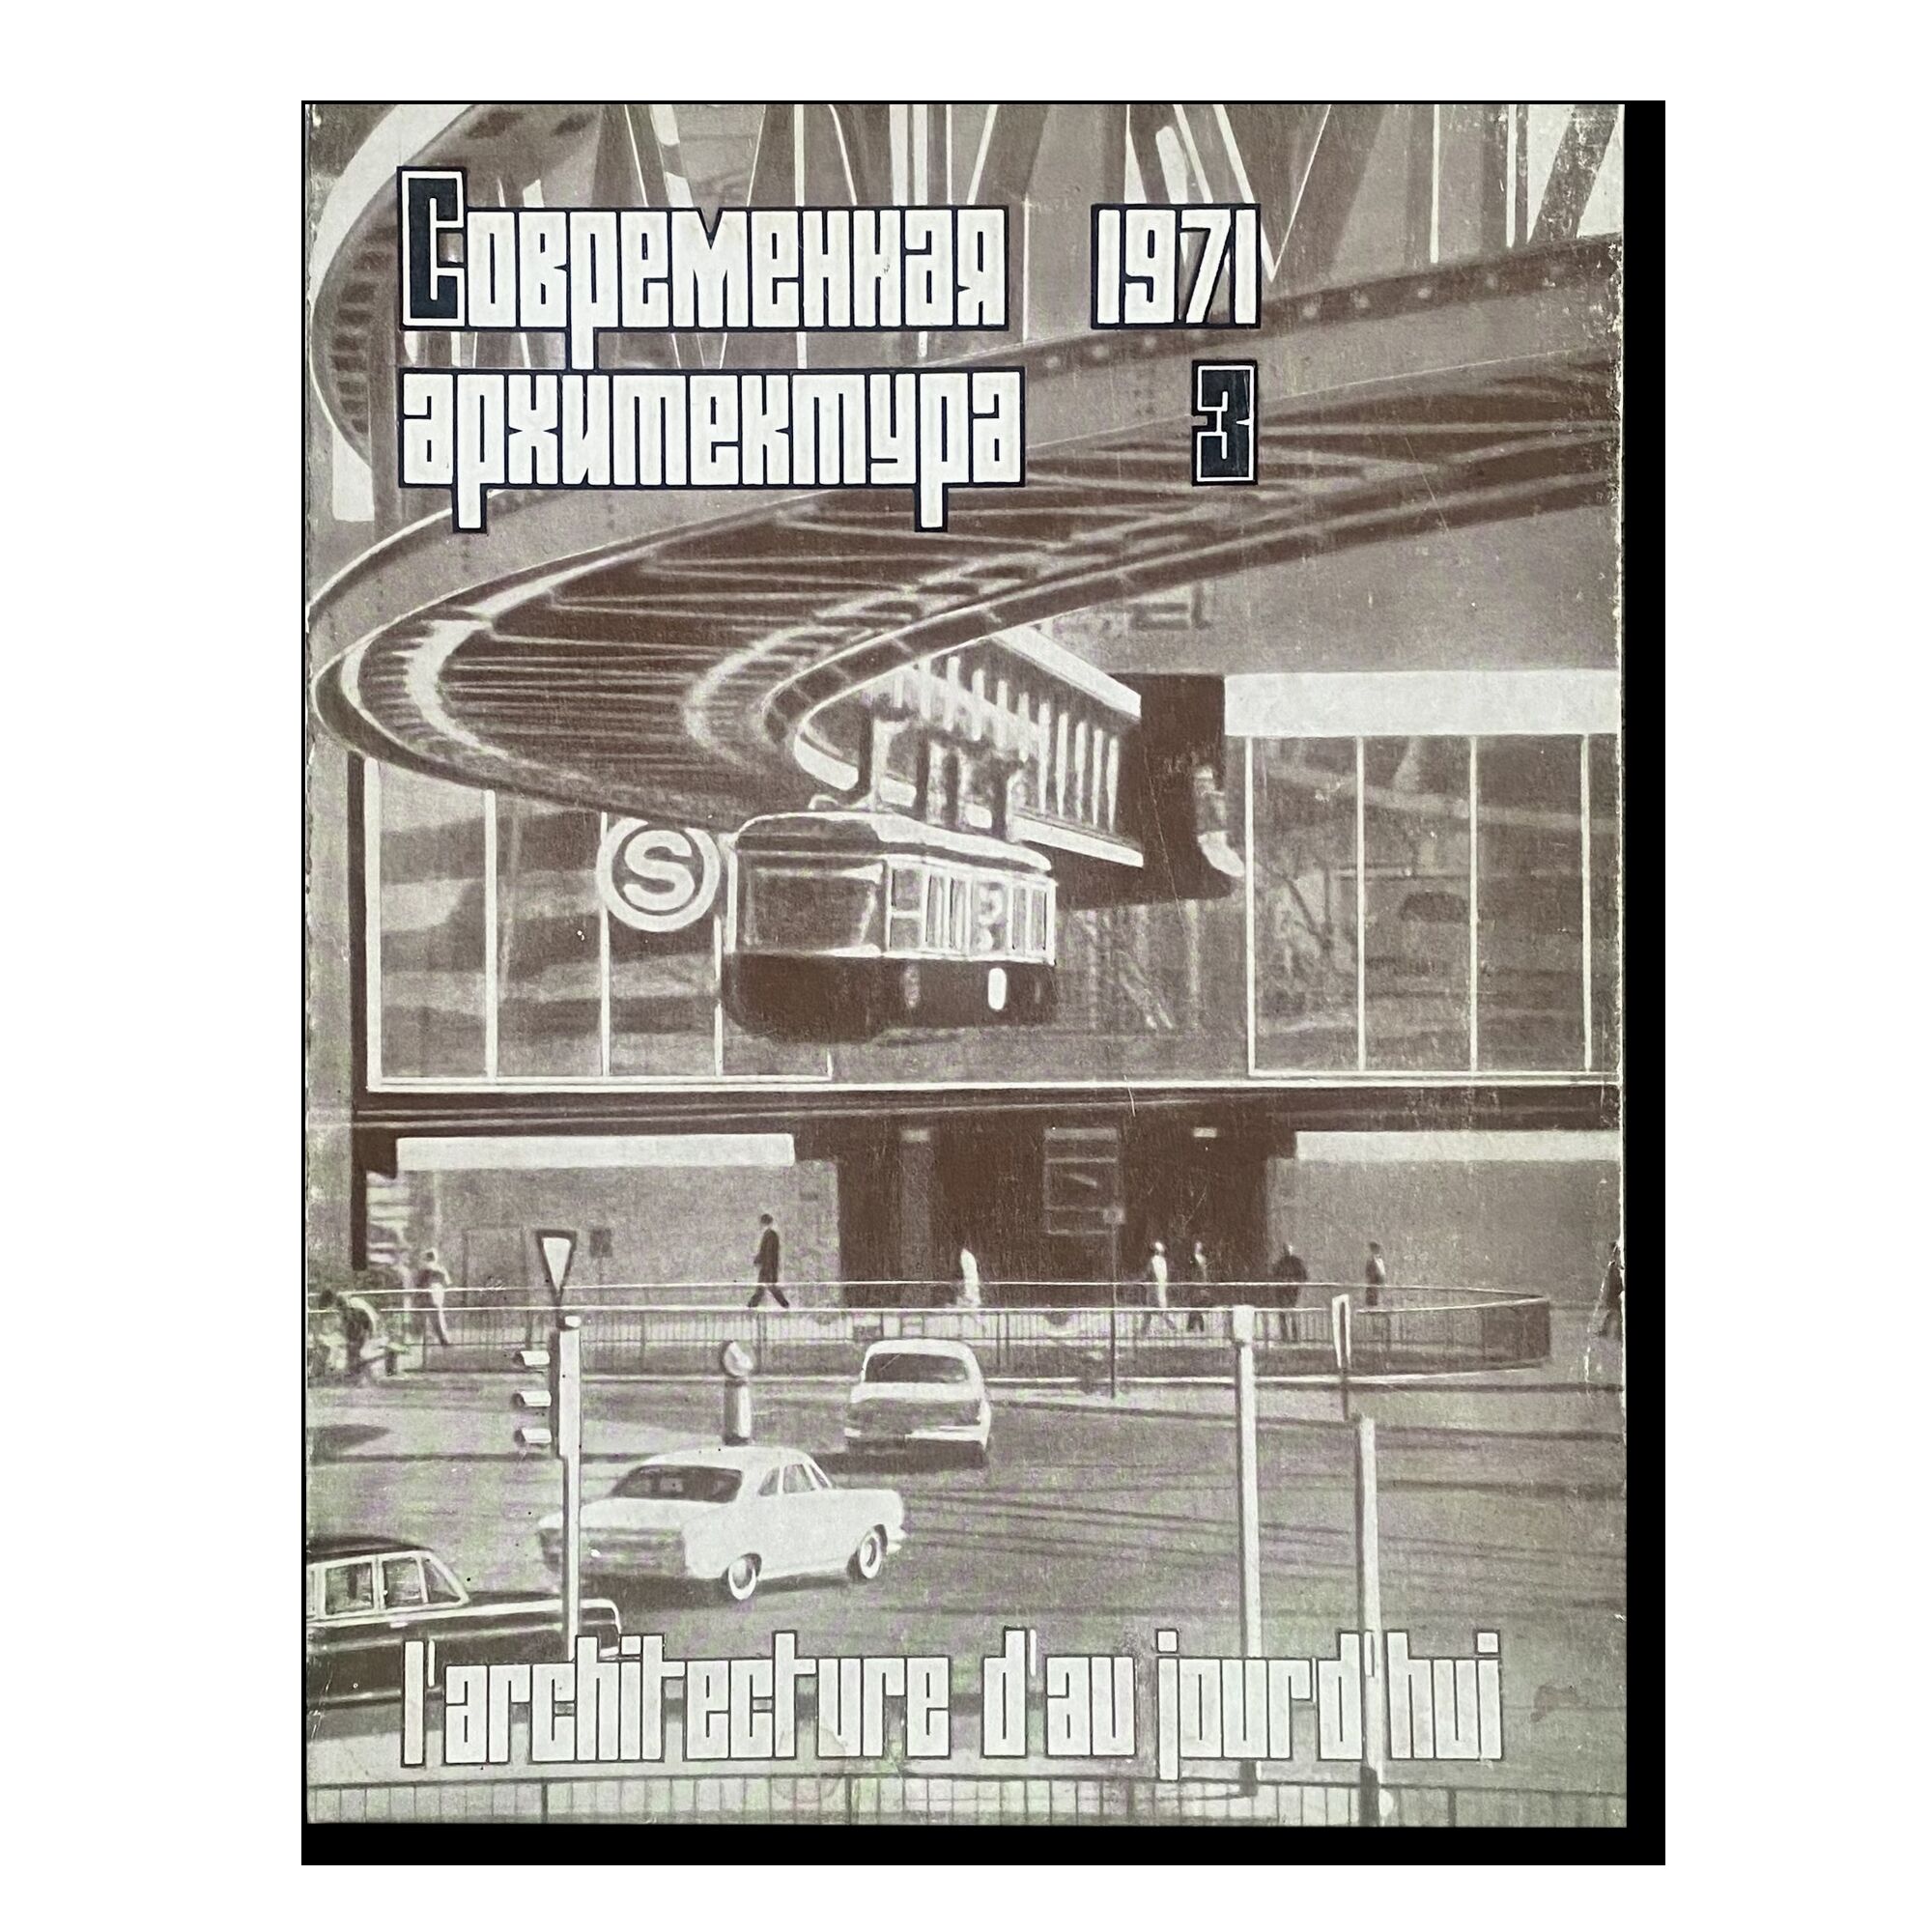 Журнал "Современная архитектура" (3) 1971